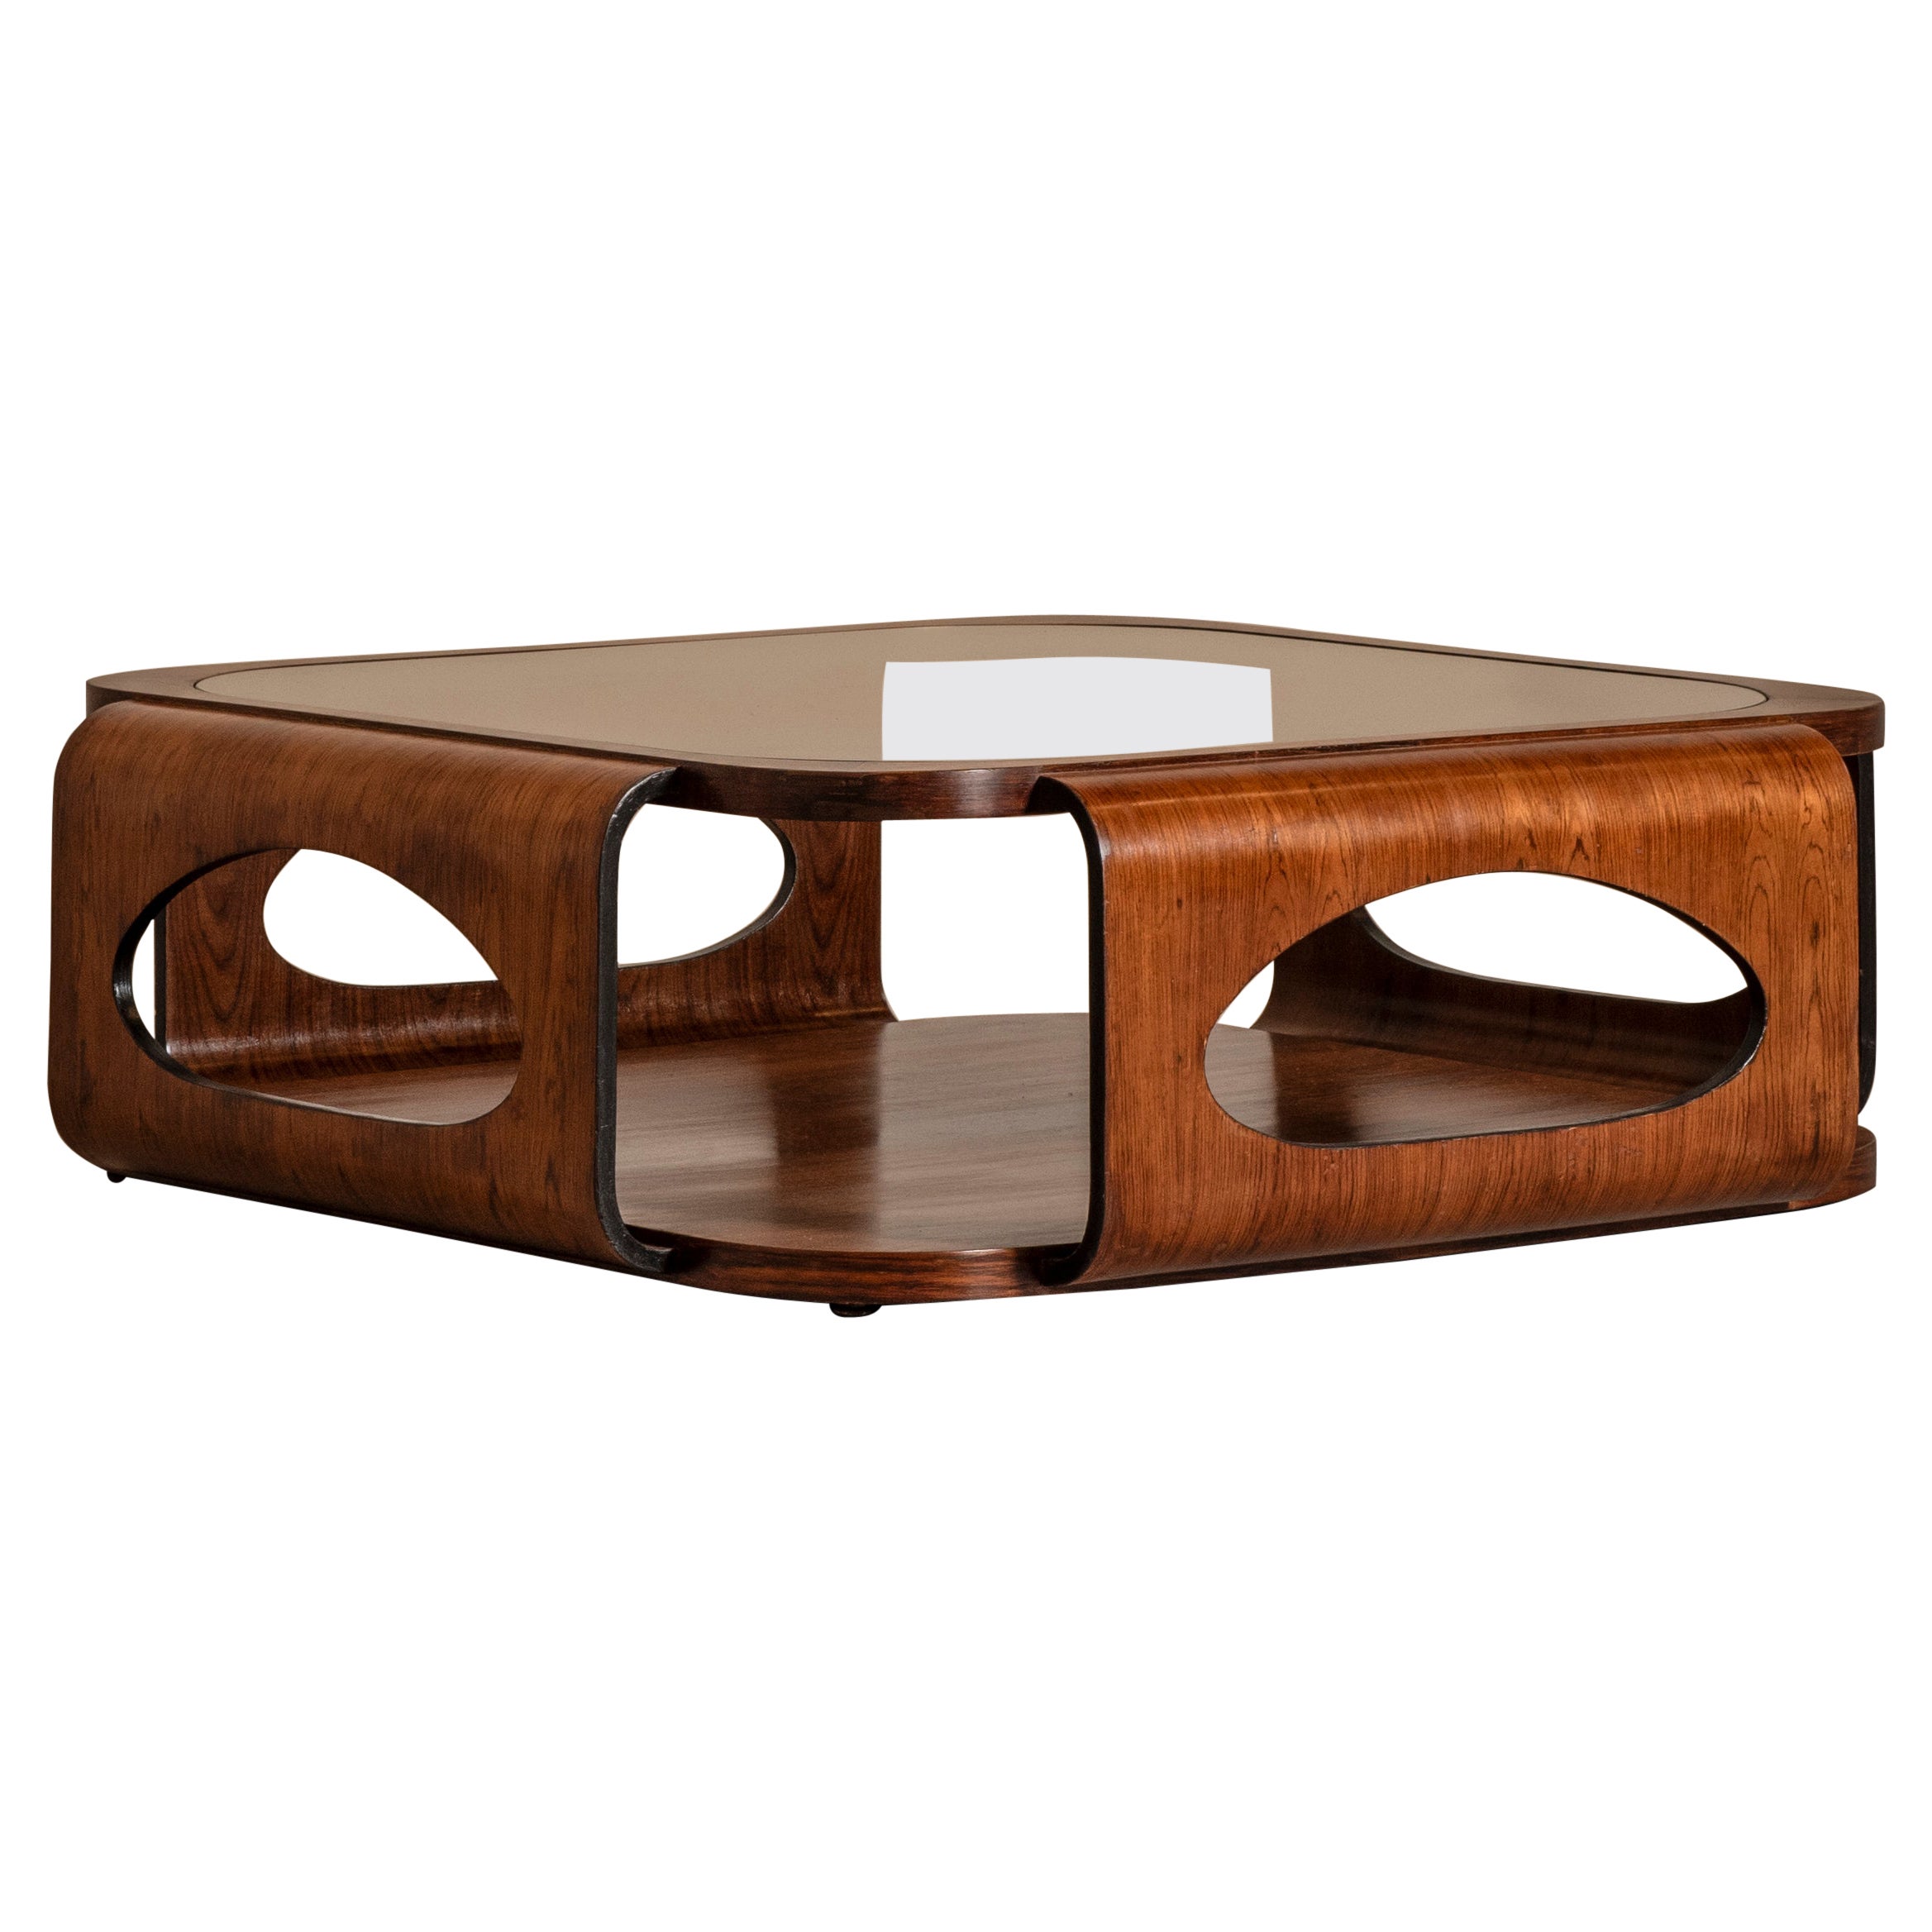 Mitteltisch aus Holz und Glas, von Móveis Bertomeu, Mid-Century Modern Design